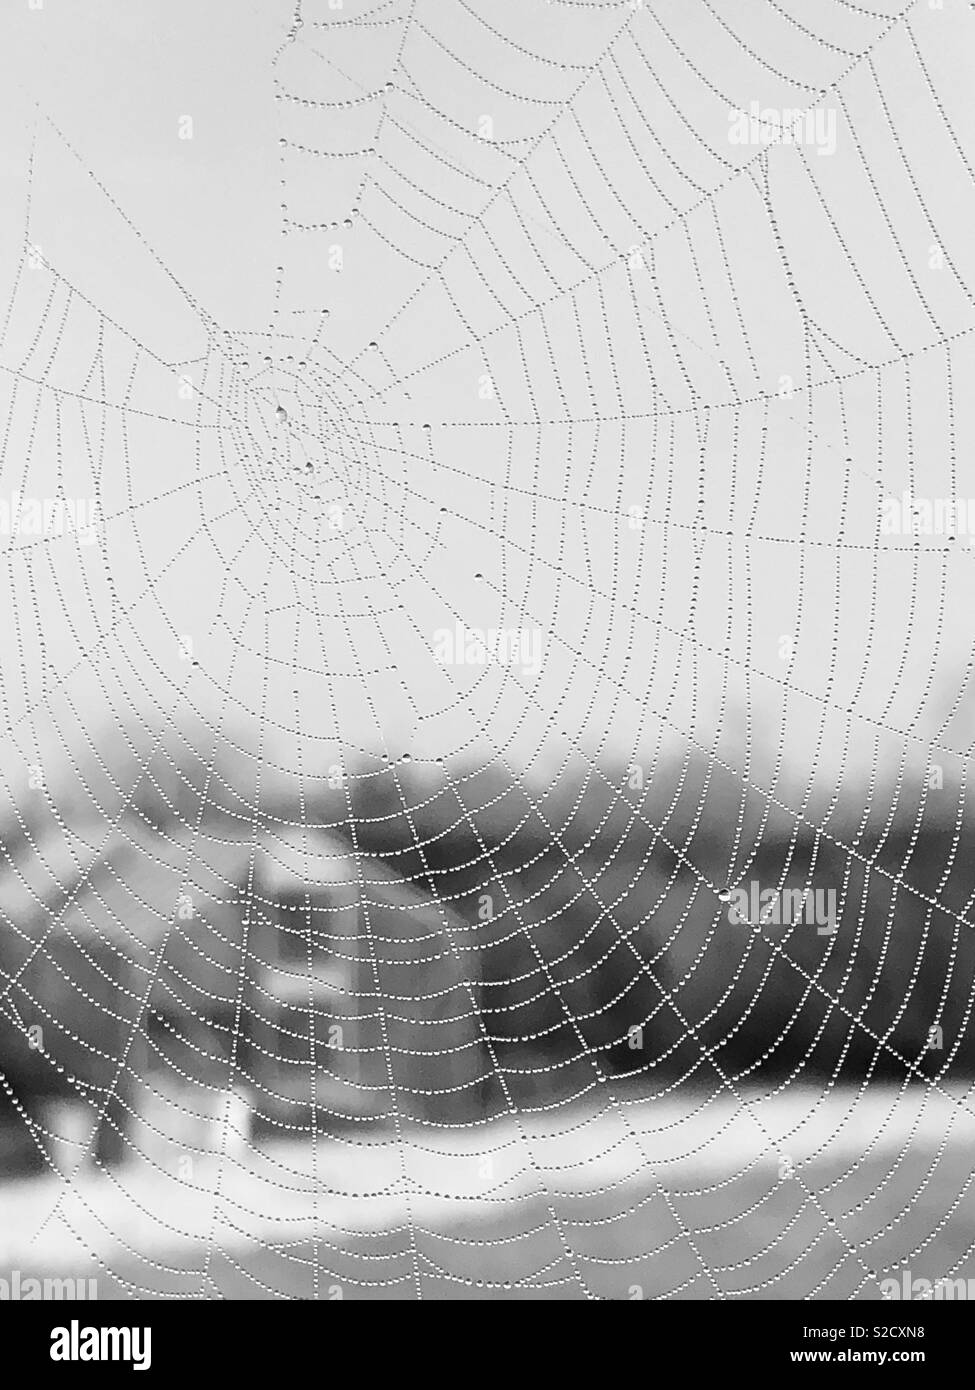 Web d’araignées Banque D'Images